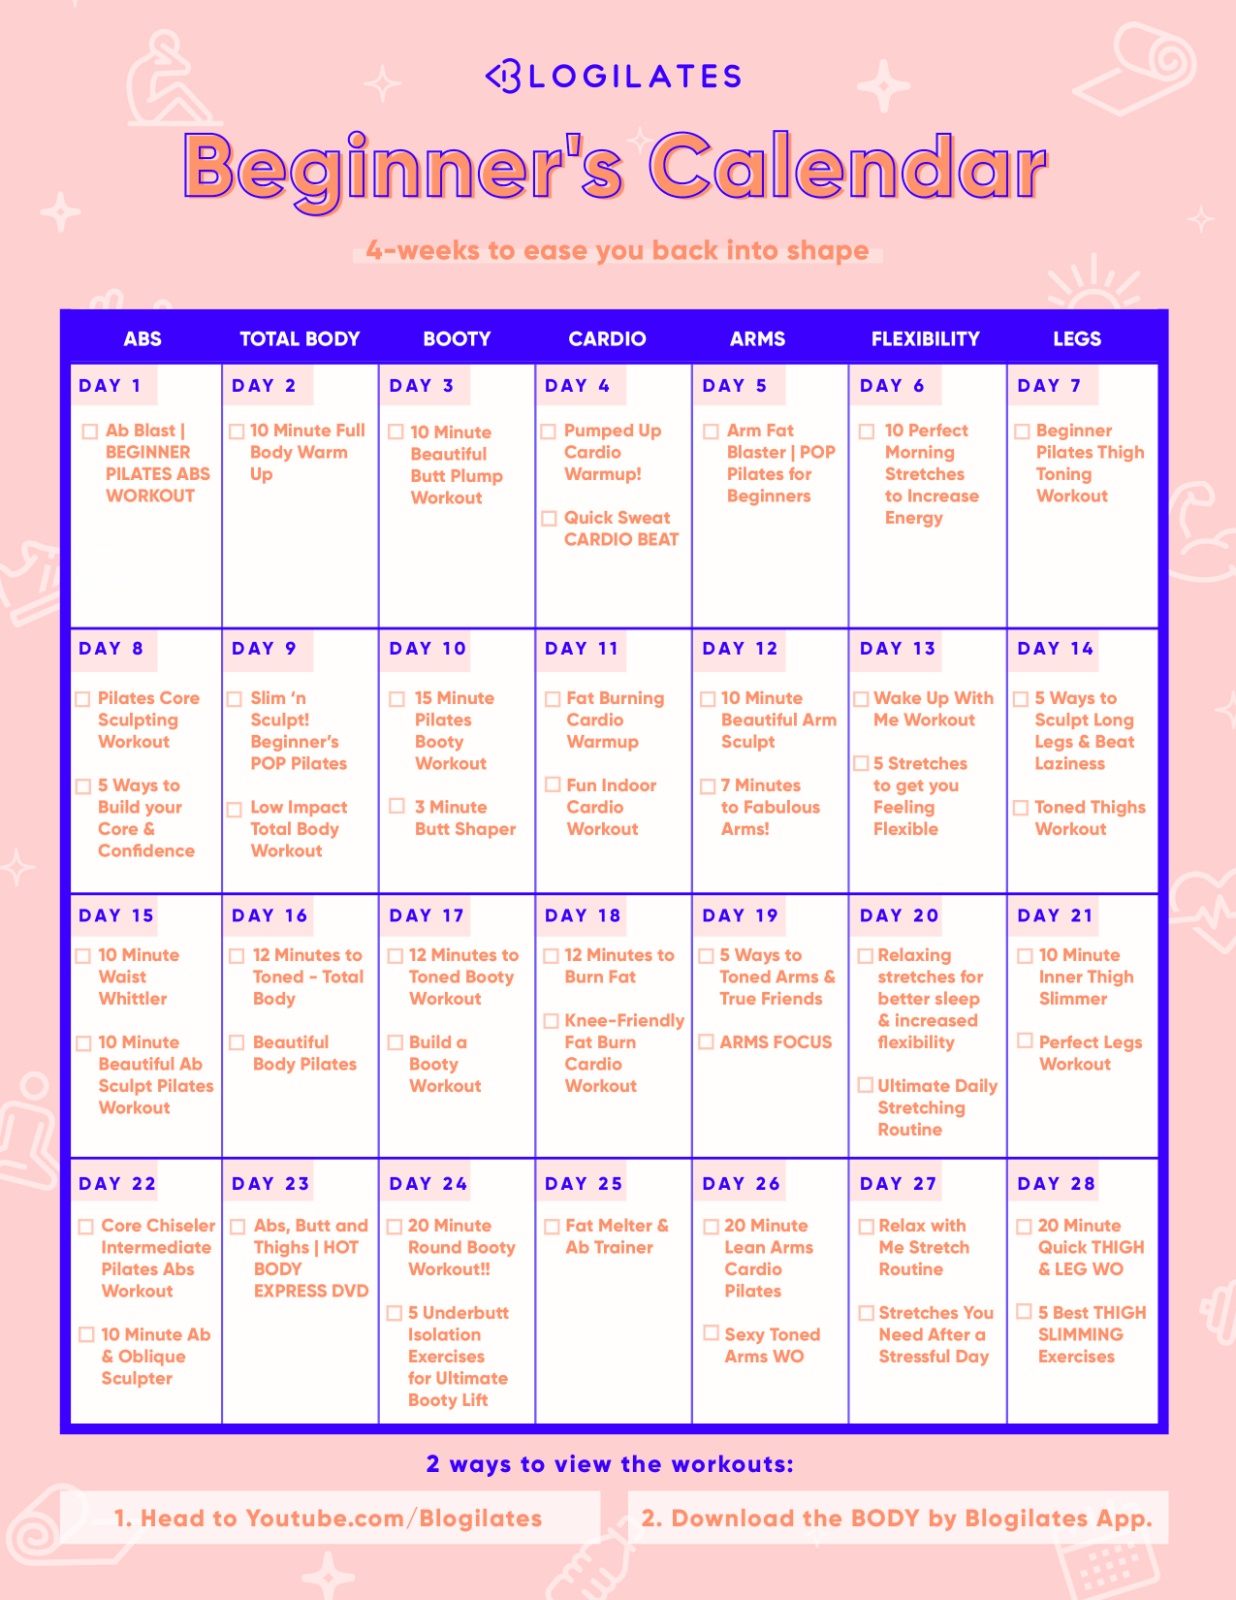 A 28 Day Workout Calendar for Beginners Blogilates